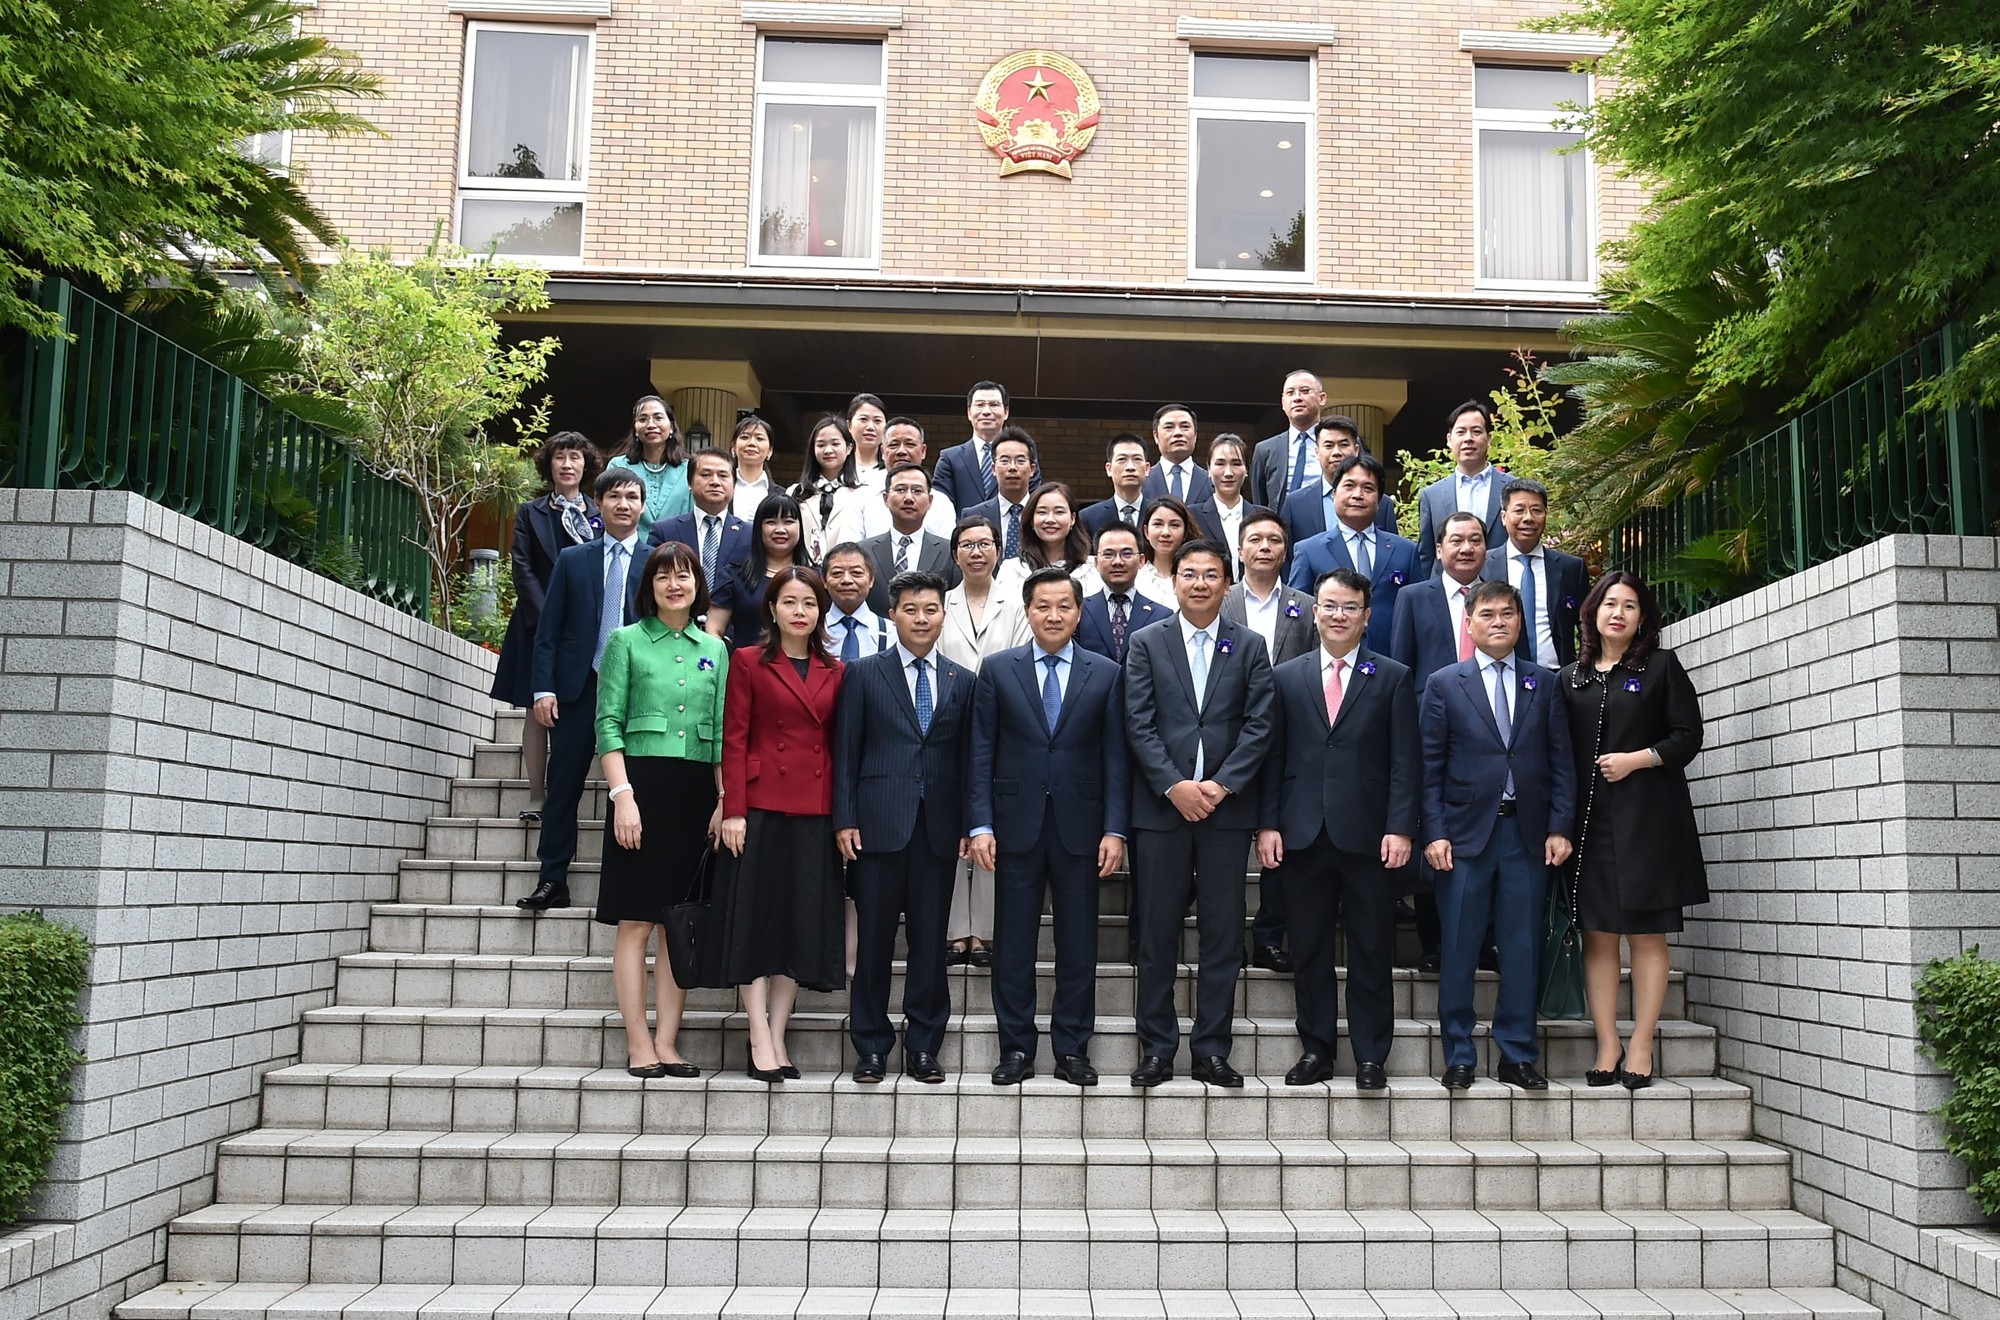 Đề nghị Nhật Bản hợp tác đào tạo nguồn nhân lực cho Việt Nam trong ngành bán dẫn